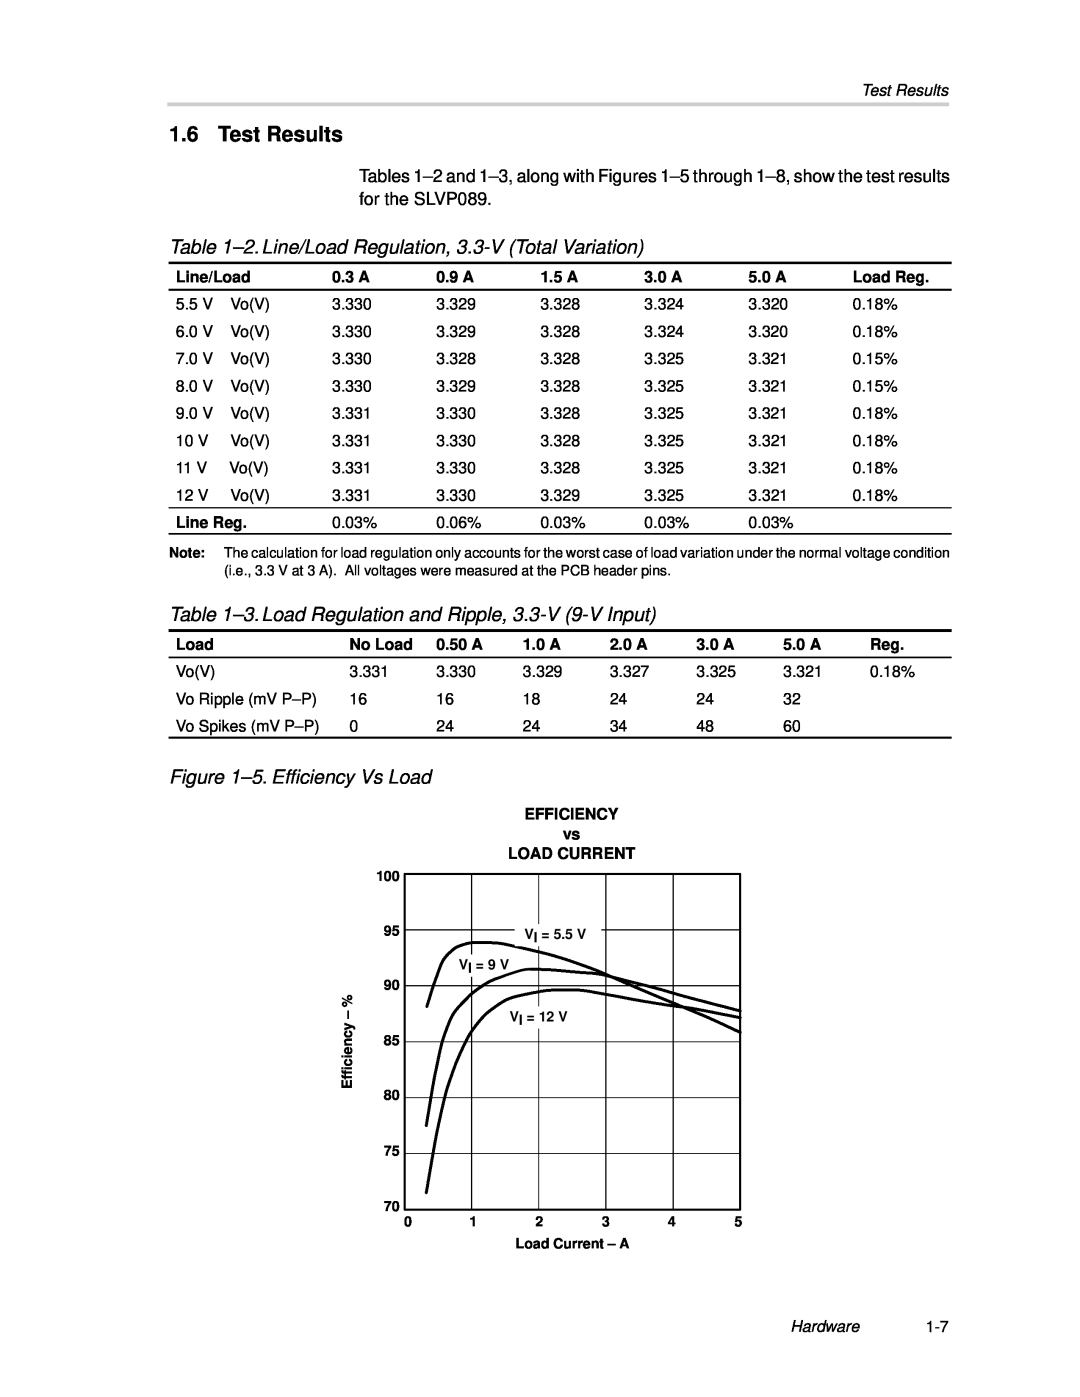 Texas Instruments SLVP089 Test Results, 2. Line/Load Regulation, 3.3-V Total Variation, 5. Efficiency Vs Load, Hardware1-7 